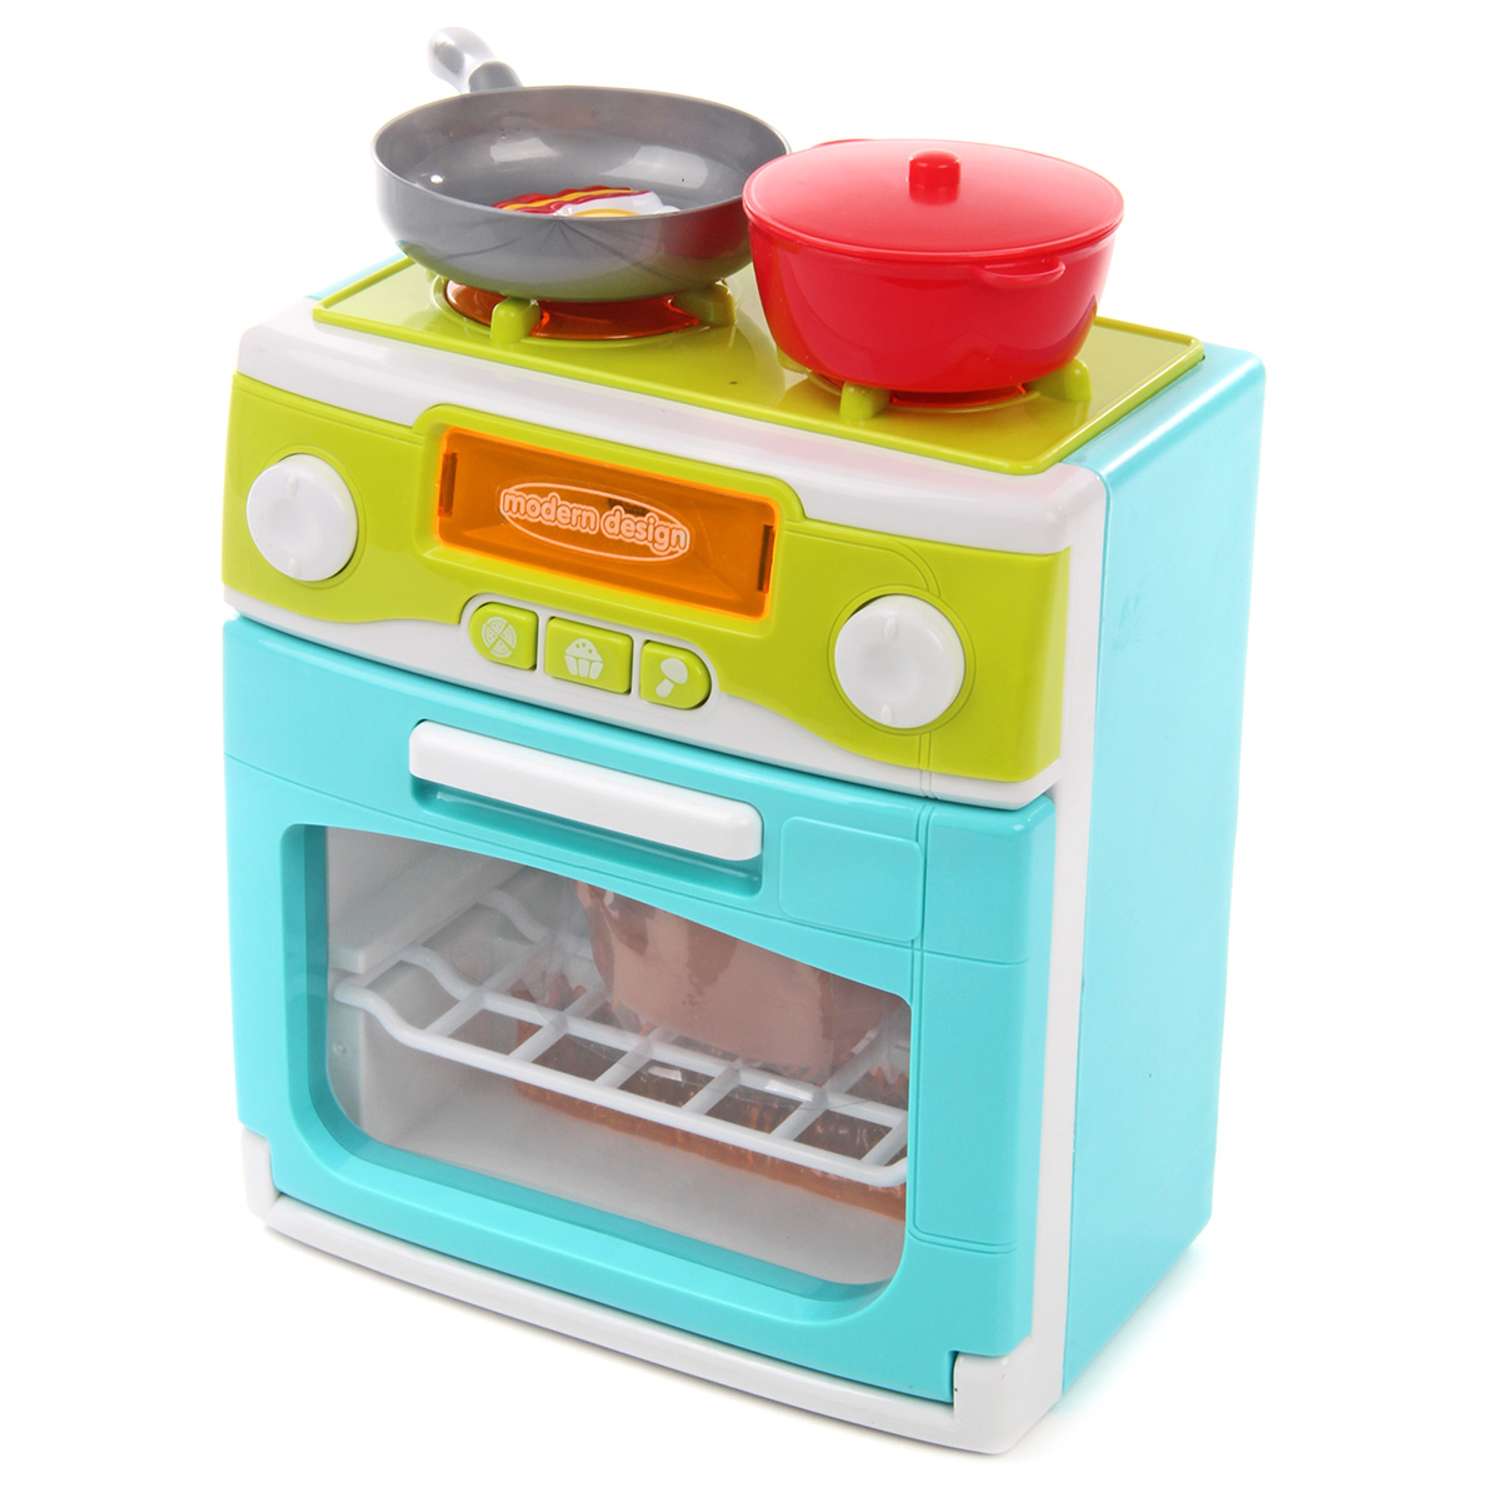 Детская кухня Amico Плита посуда игрушечные продукты свет звуки - фото 1